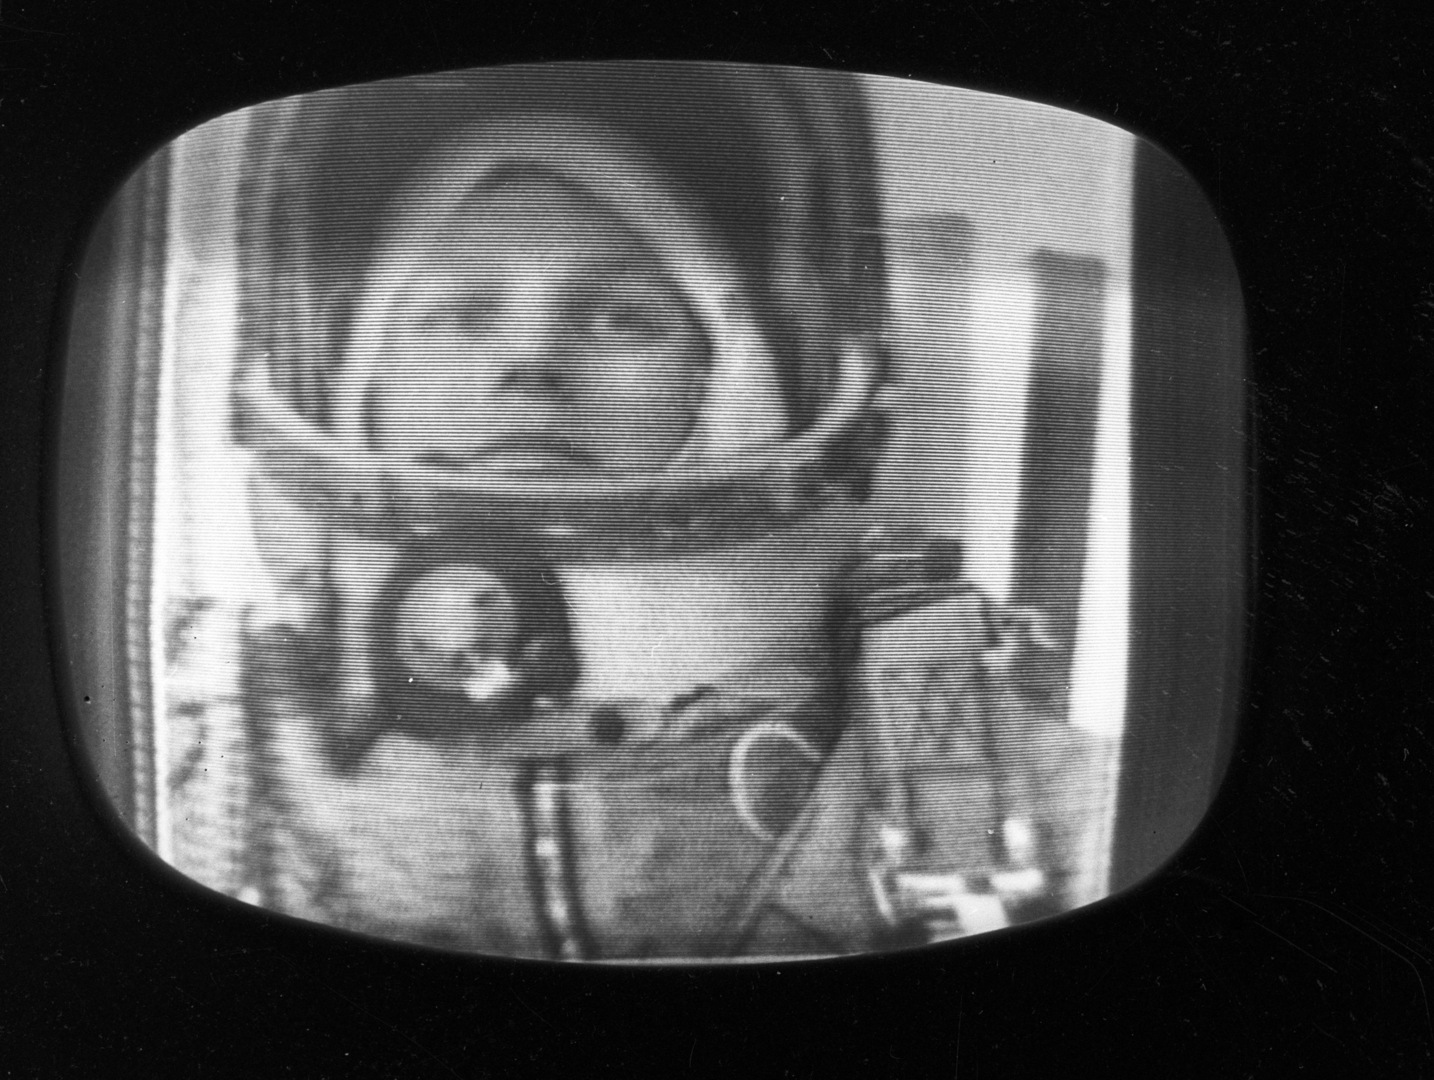 السينما الروسية تعرض 3 أفلام جديدة بمناسبة الذكرى الـ 60 لرحلة تيريشكوفا إلى الفضاء